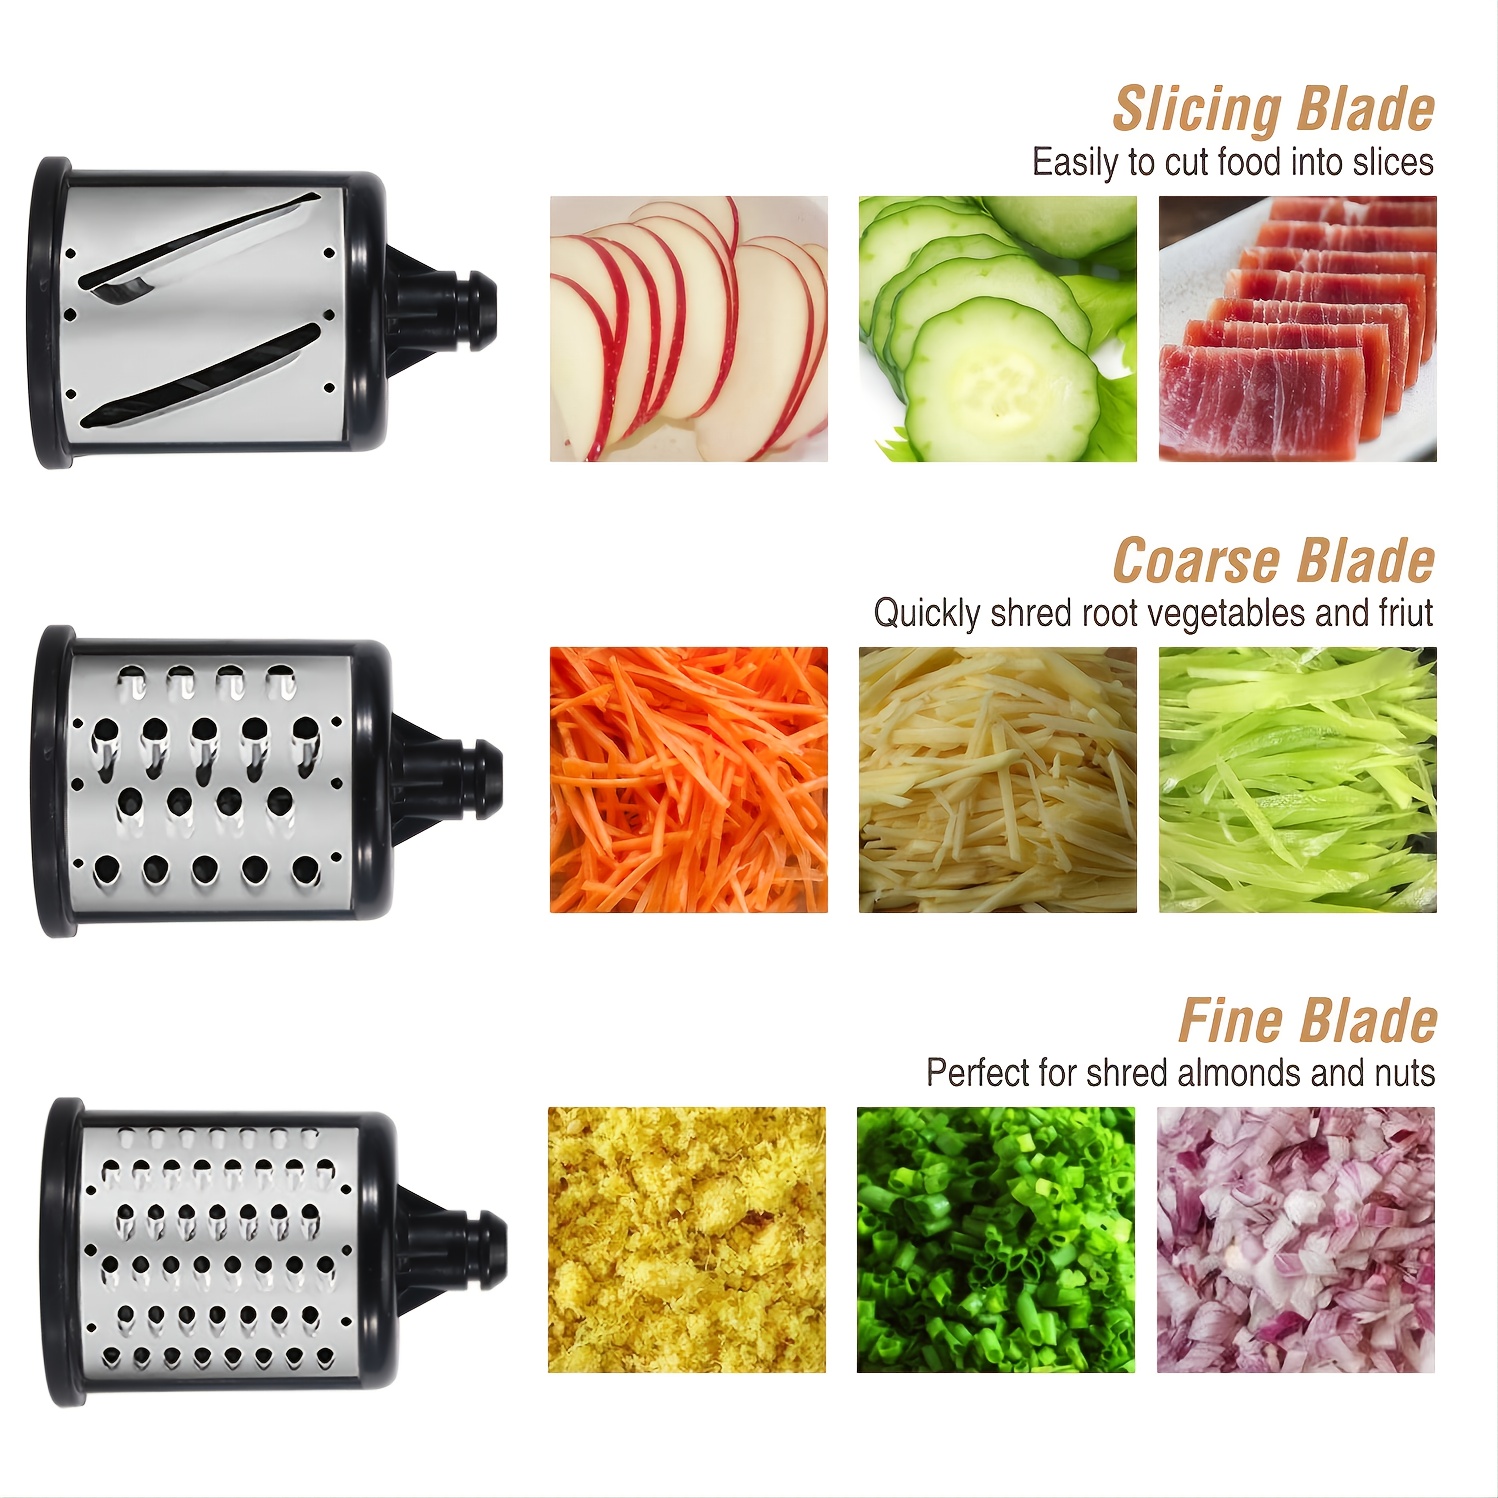 KitchenAid Food Meat Grinder Vegetable Slicer Shredder Stand Mixer Attachment Ksm2vsga